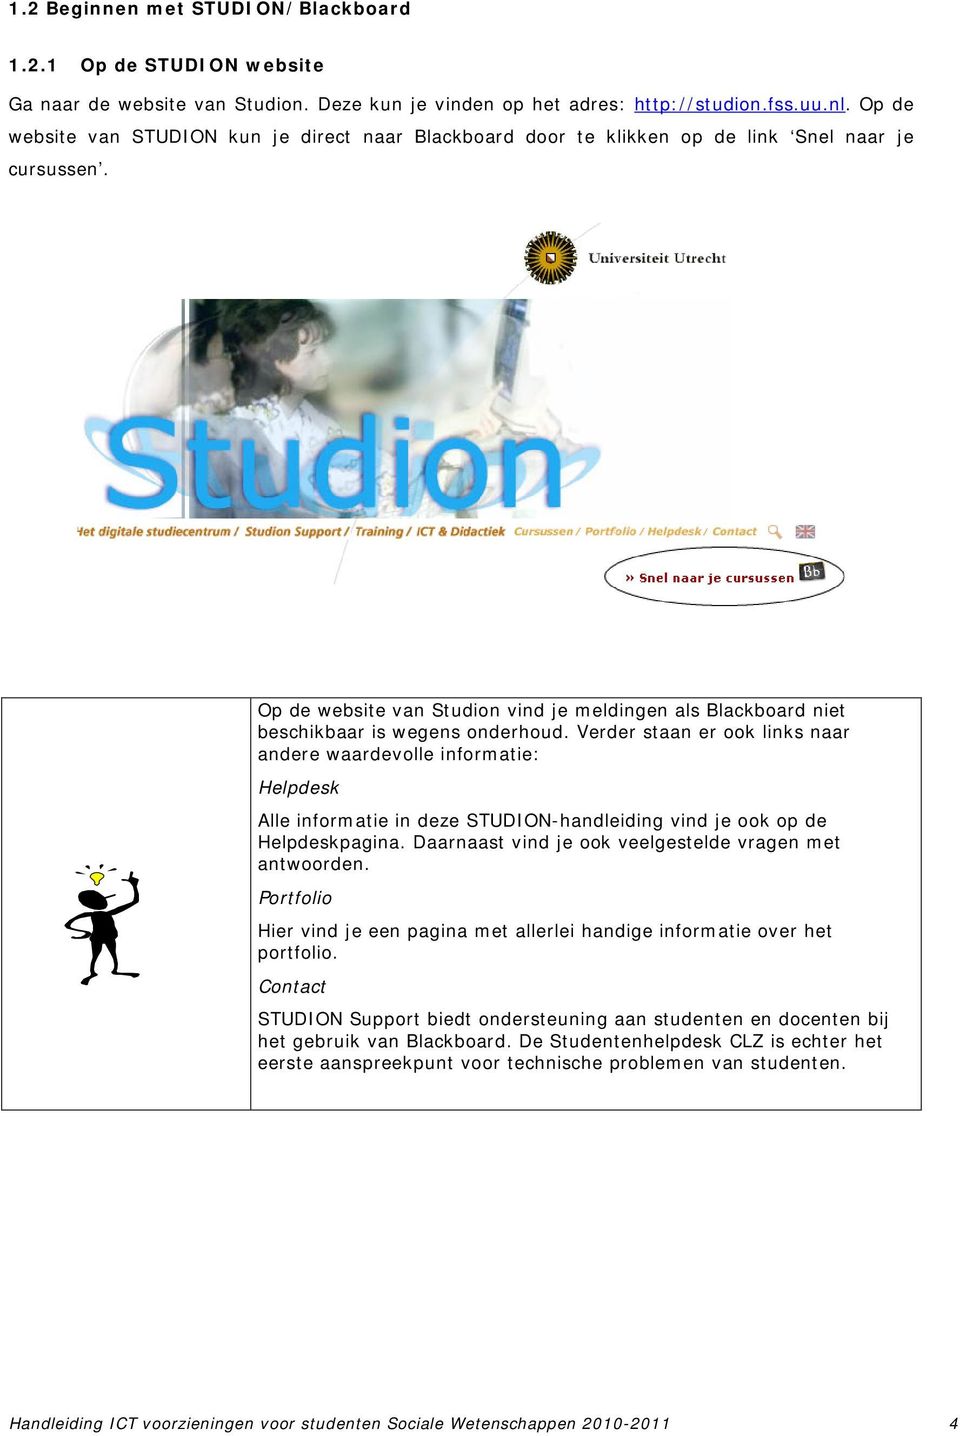 Op de website van Studion vind je meldingen als Blackboard niet beschikbaar is wegens onderhoud.